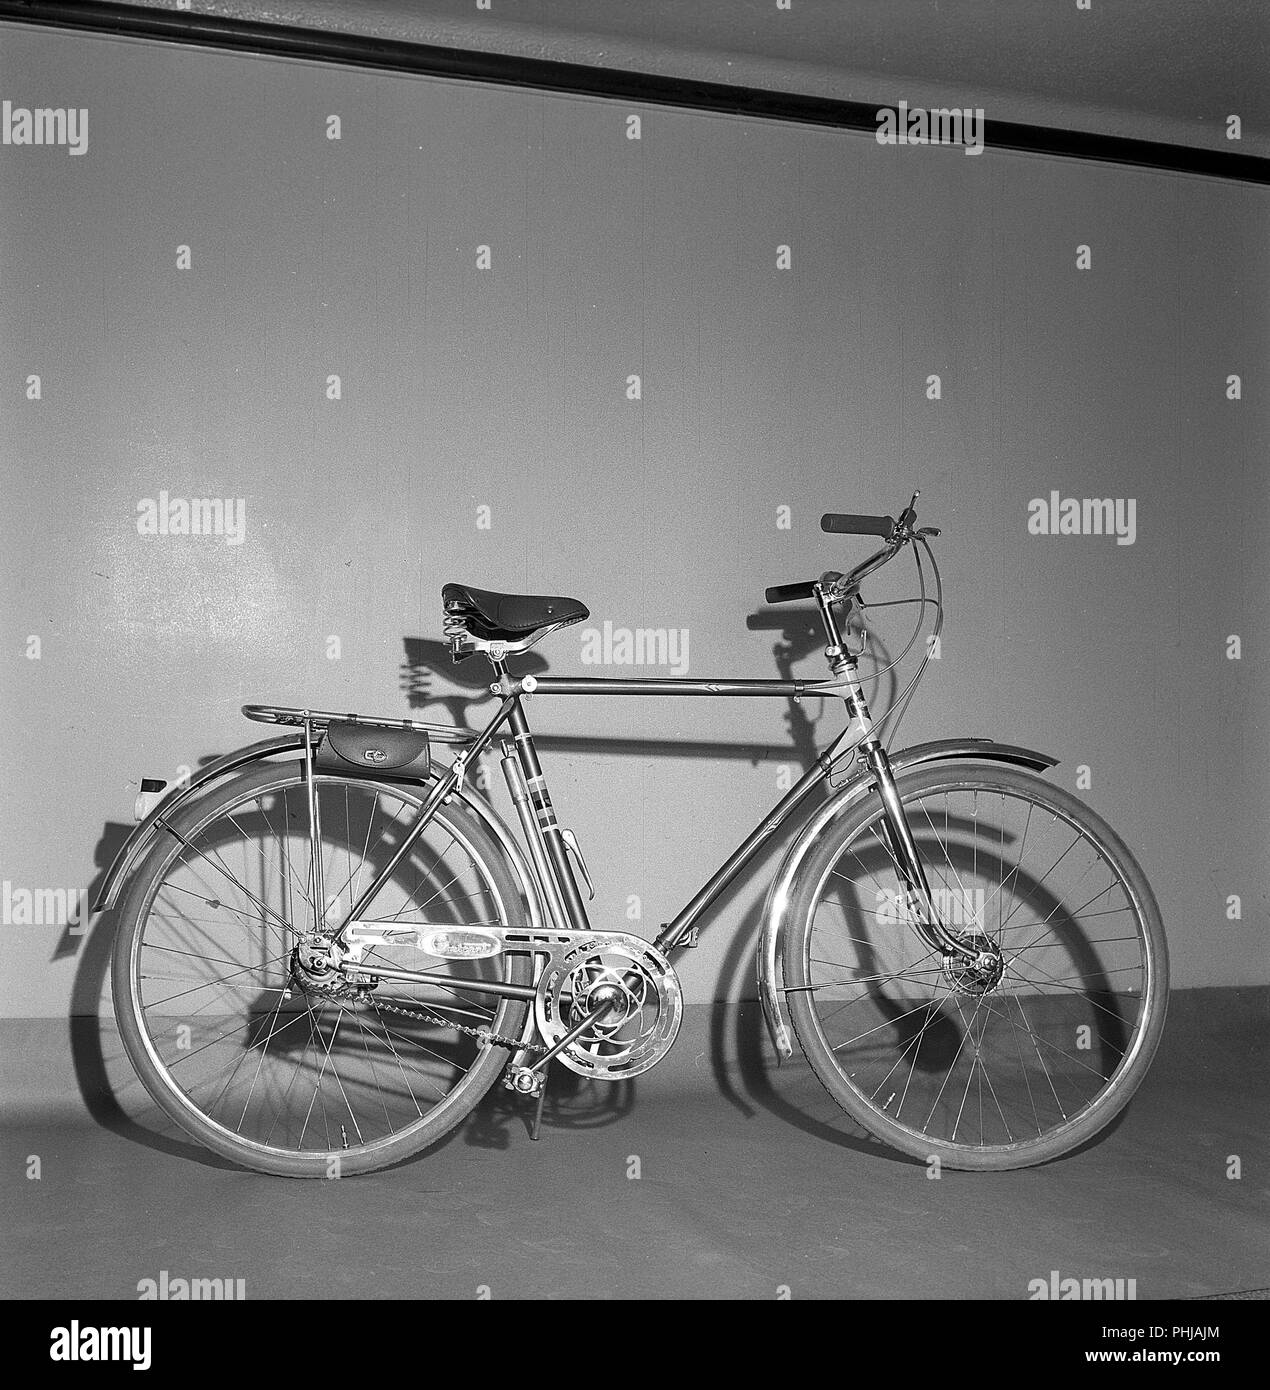 1950er Fahrrad. Ein exklusives Modell für Männer, die von schwedischen  Herstellers Nymanbolaget für die Marke Crescent. Er hat Drum bricht auf dem  Vorderrad, drei Gänge, praktische Ledertasche für Werkzeuge und eine  Halterung